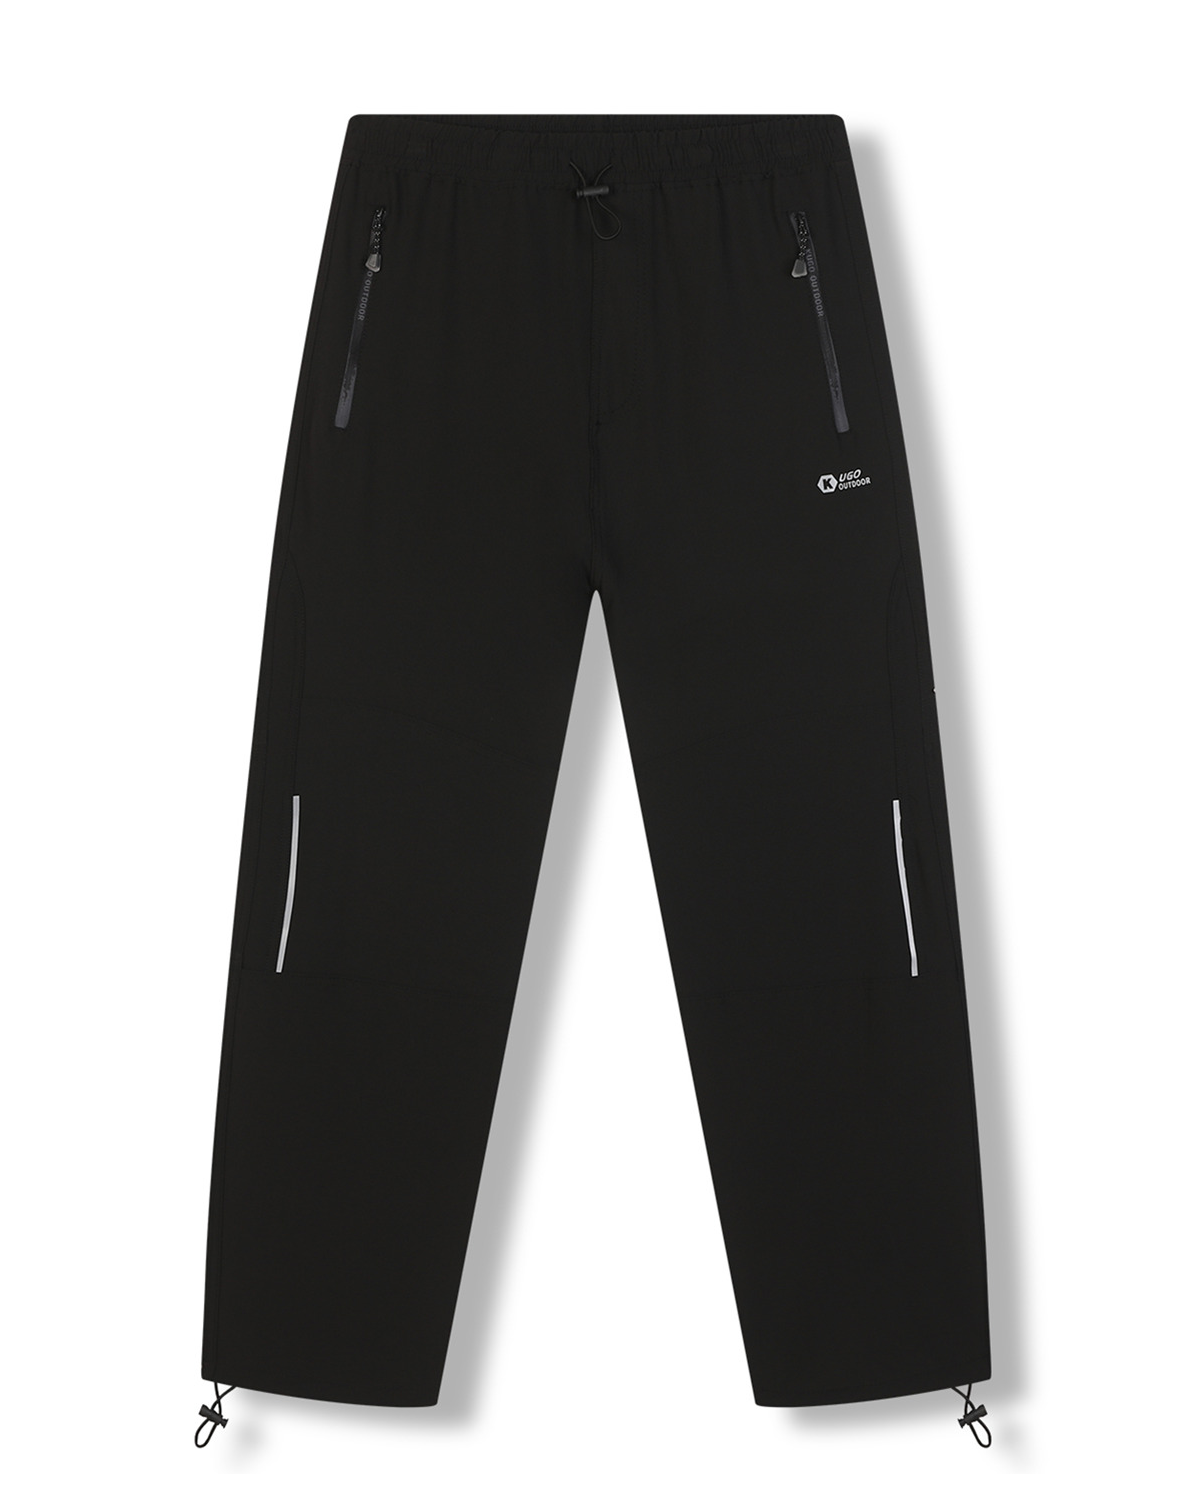 Pánské softshellové kalhoty - KUGO HK7587, celočerná Barva: Černá, Velikost: M